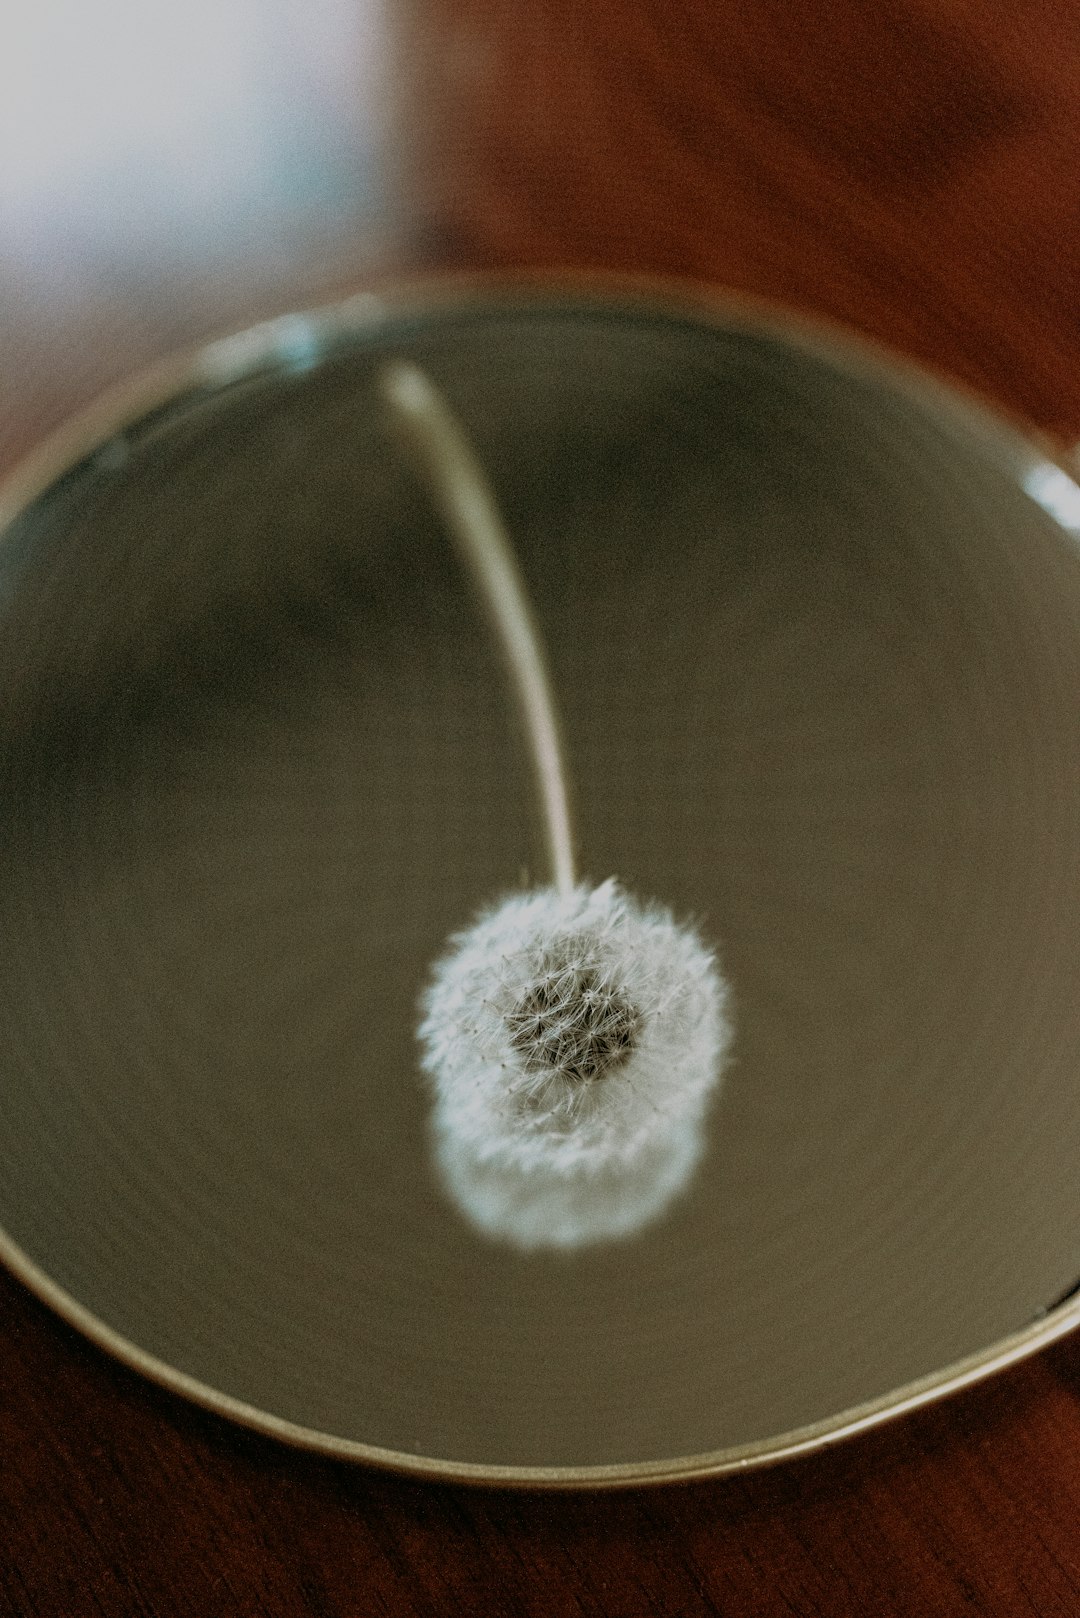 white dandelion in brown pot